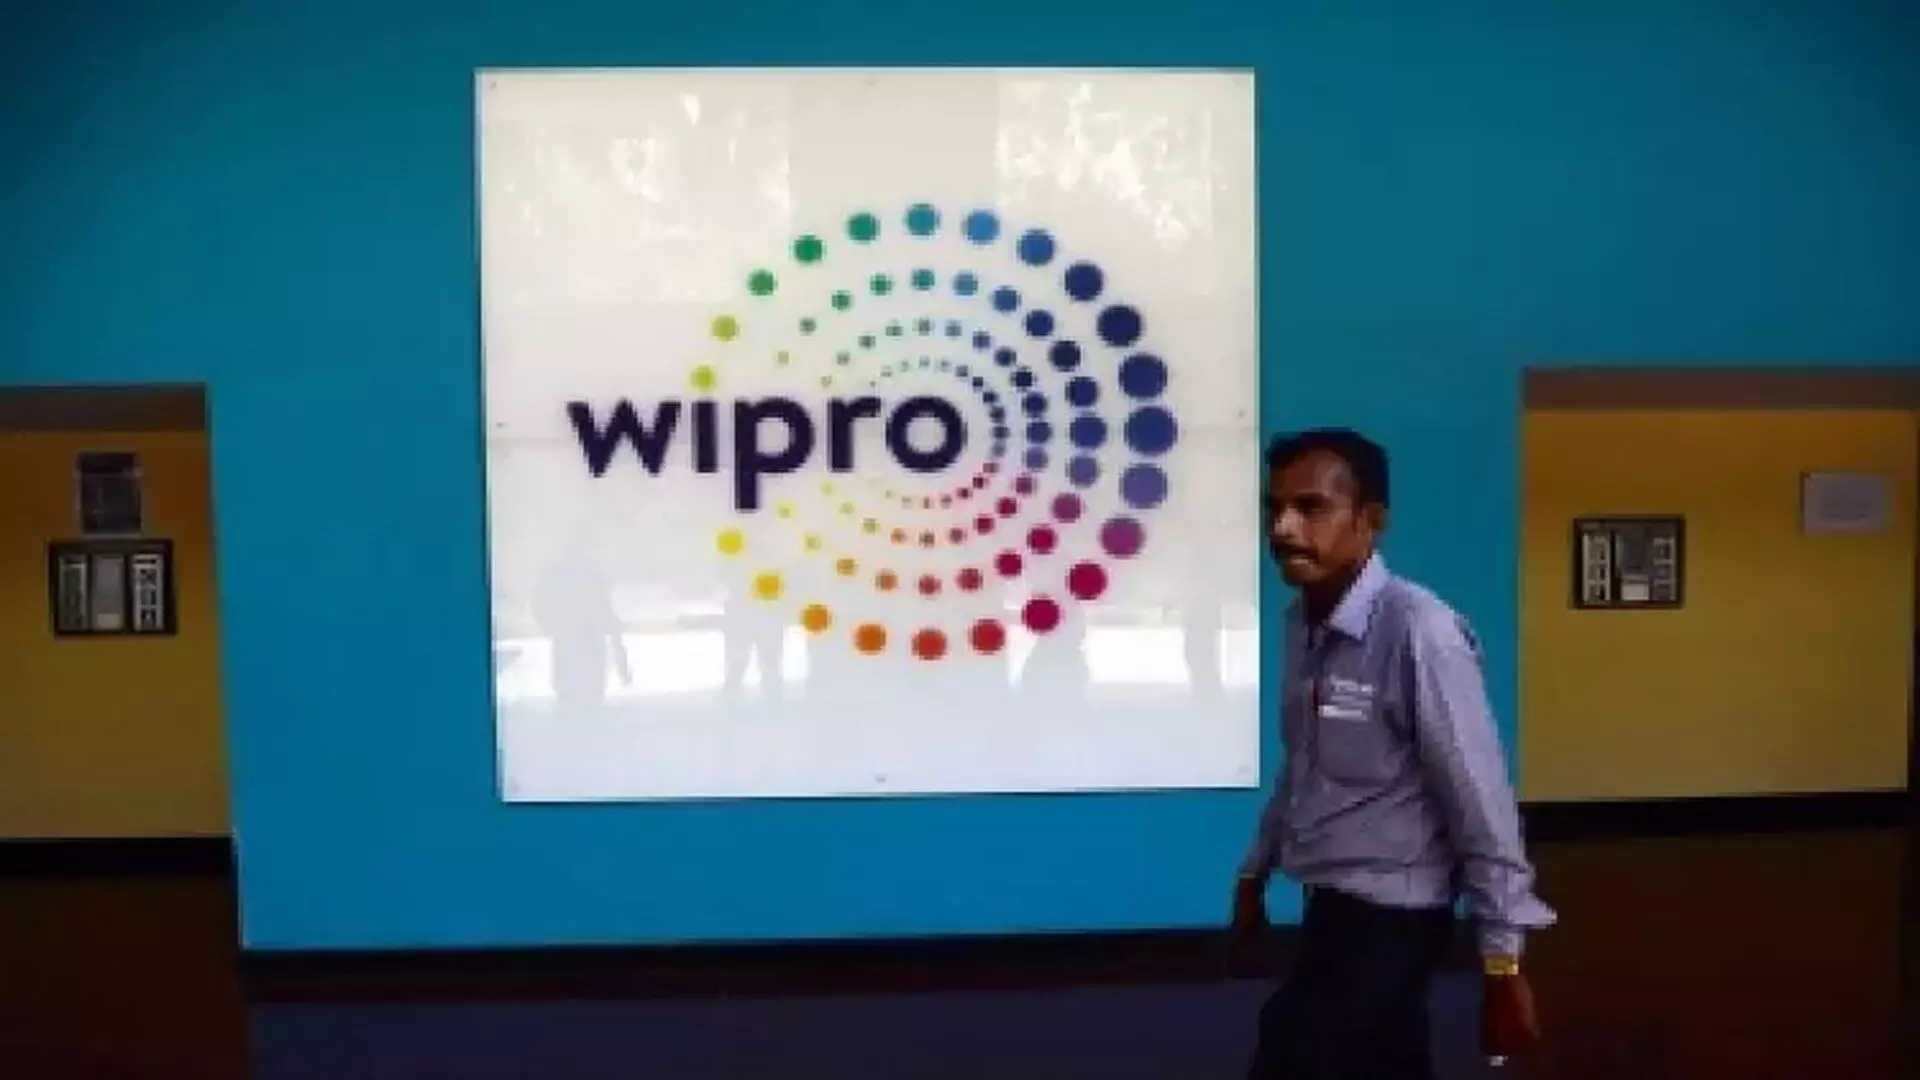 आय घोषणा के बाद Wipro के शेयरों में लगभग 9% की गिरावट